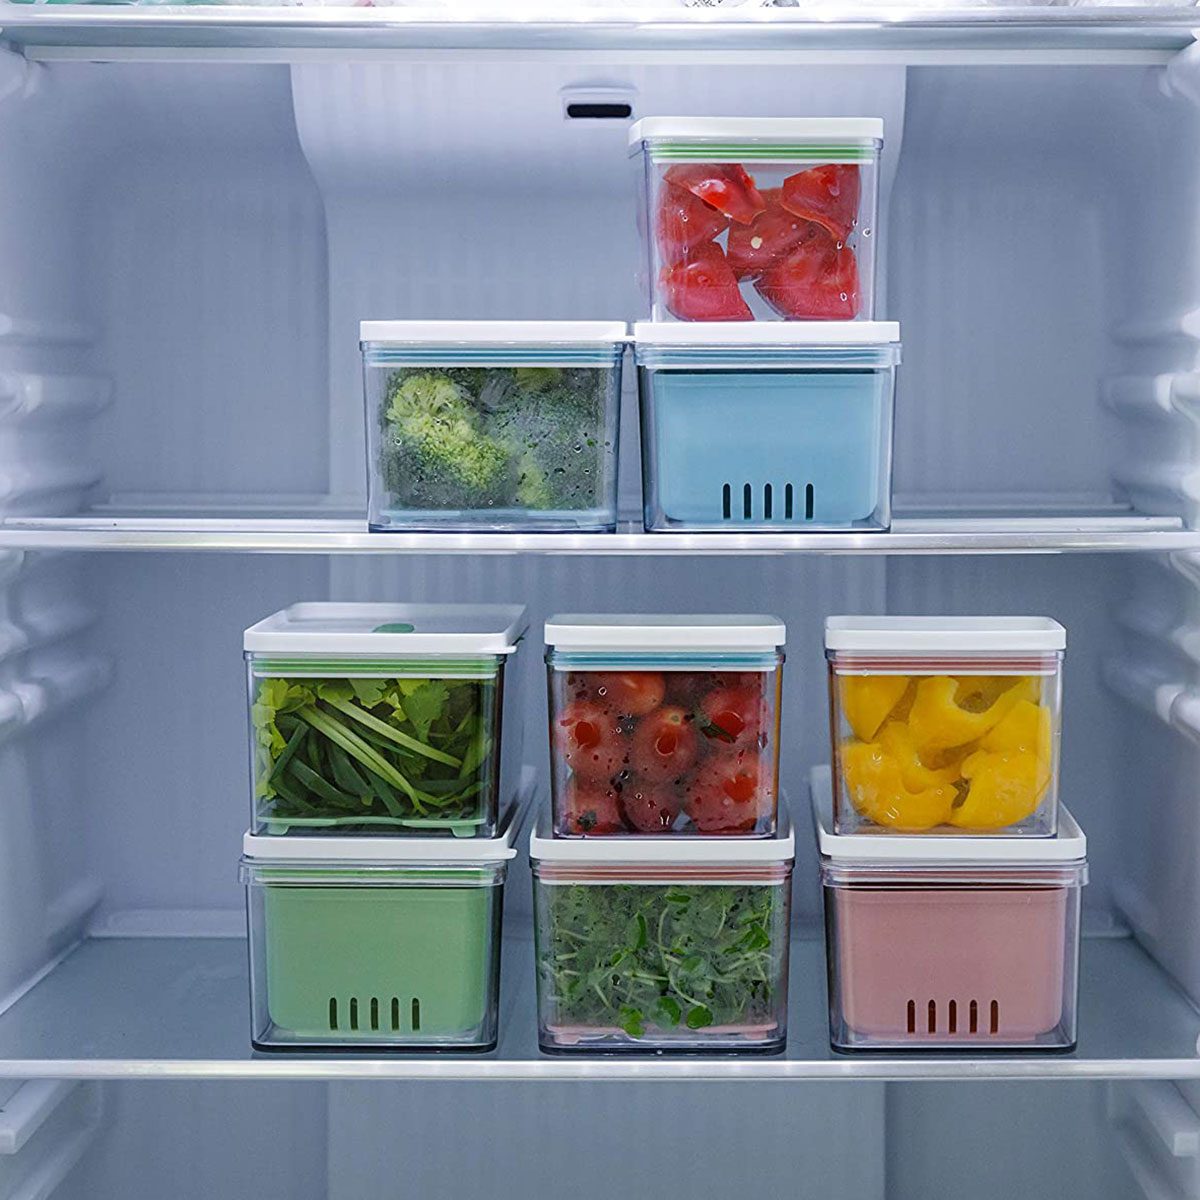 10 Pack Fridge Organizer Stackable Refrigerator Organizer Bins